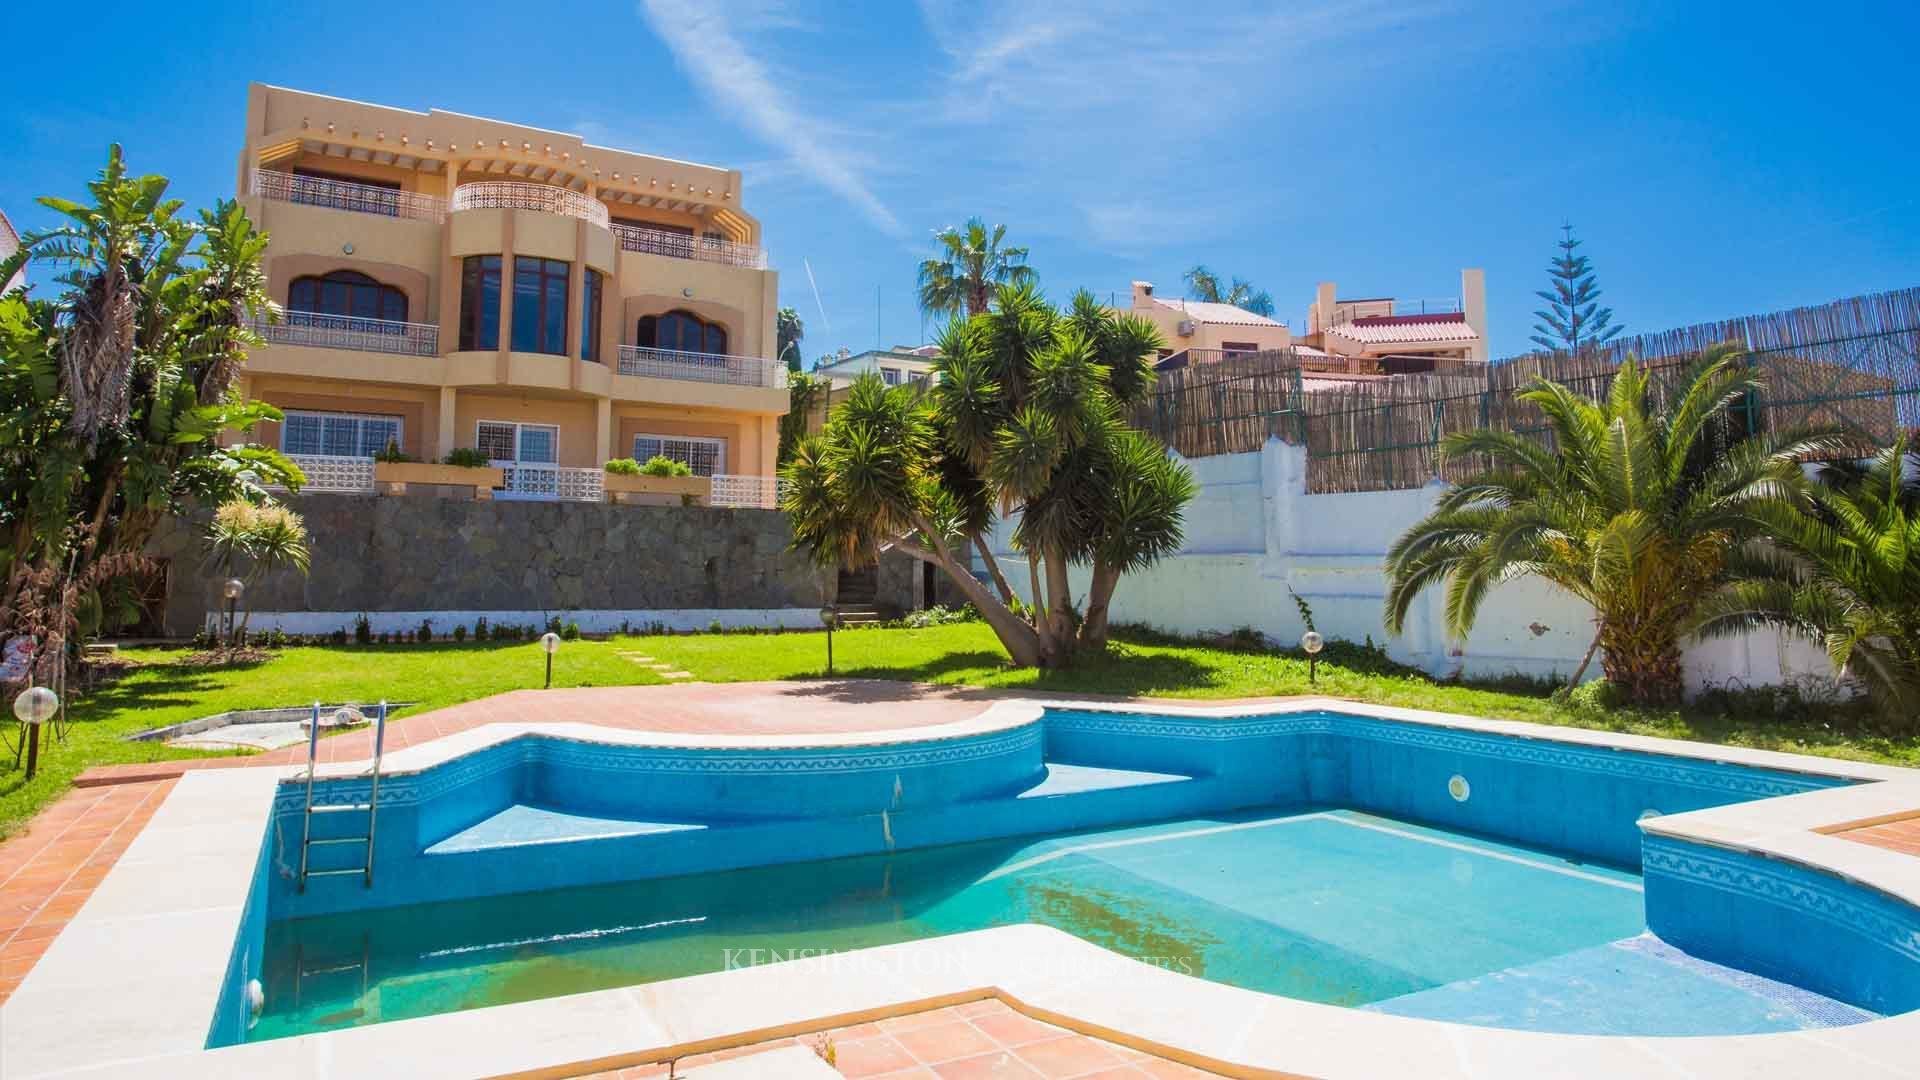 Villa Mouja in Tanger, Morocco